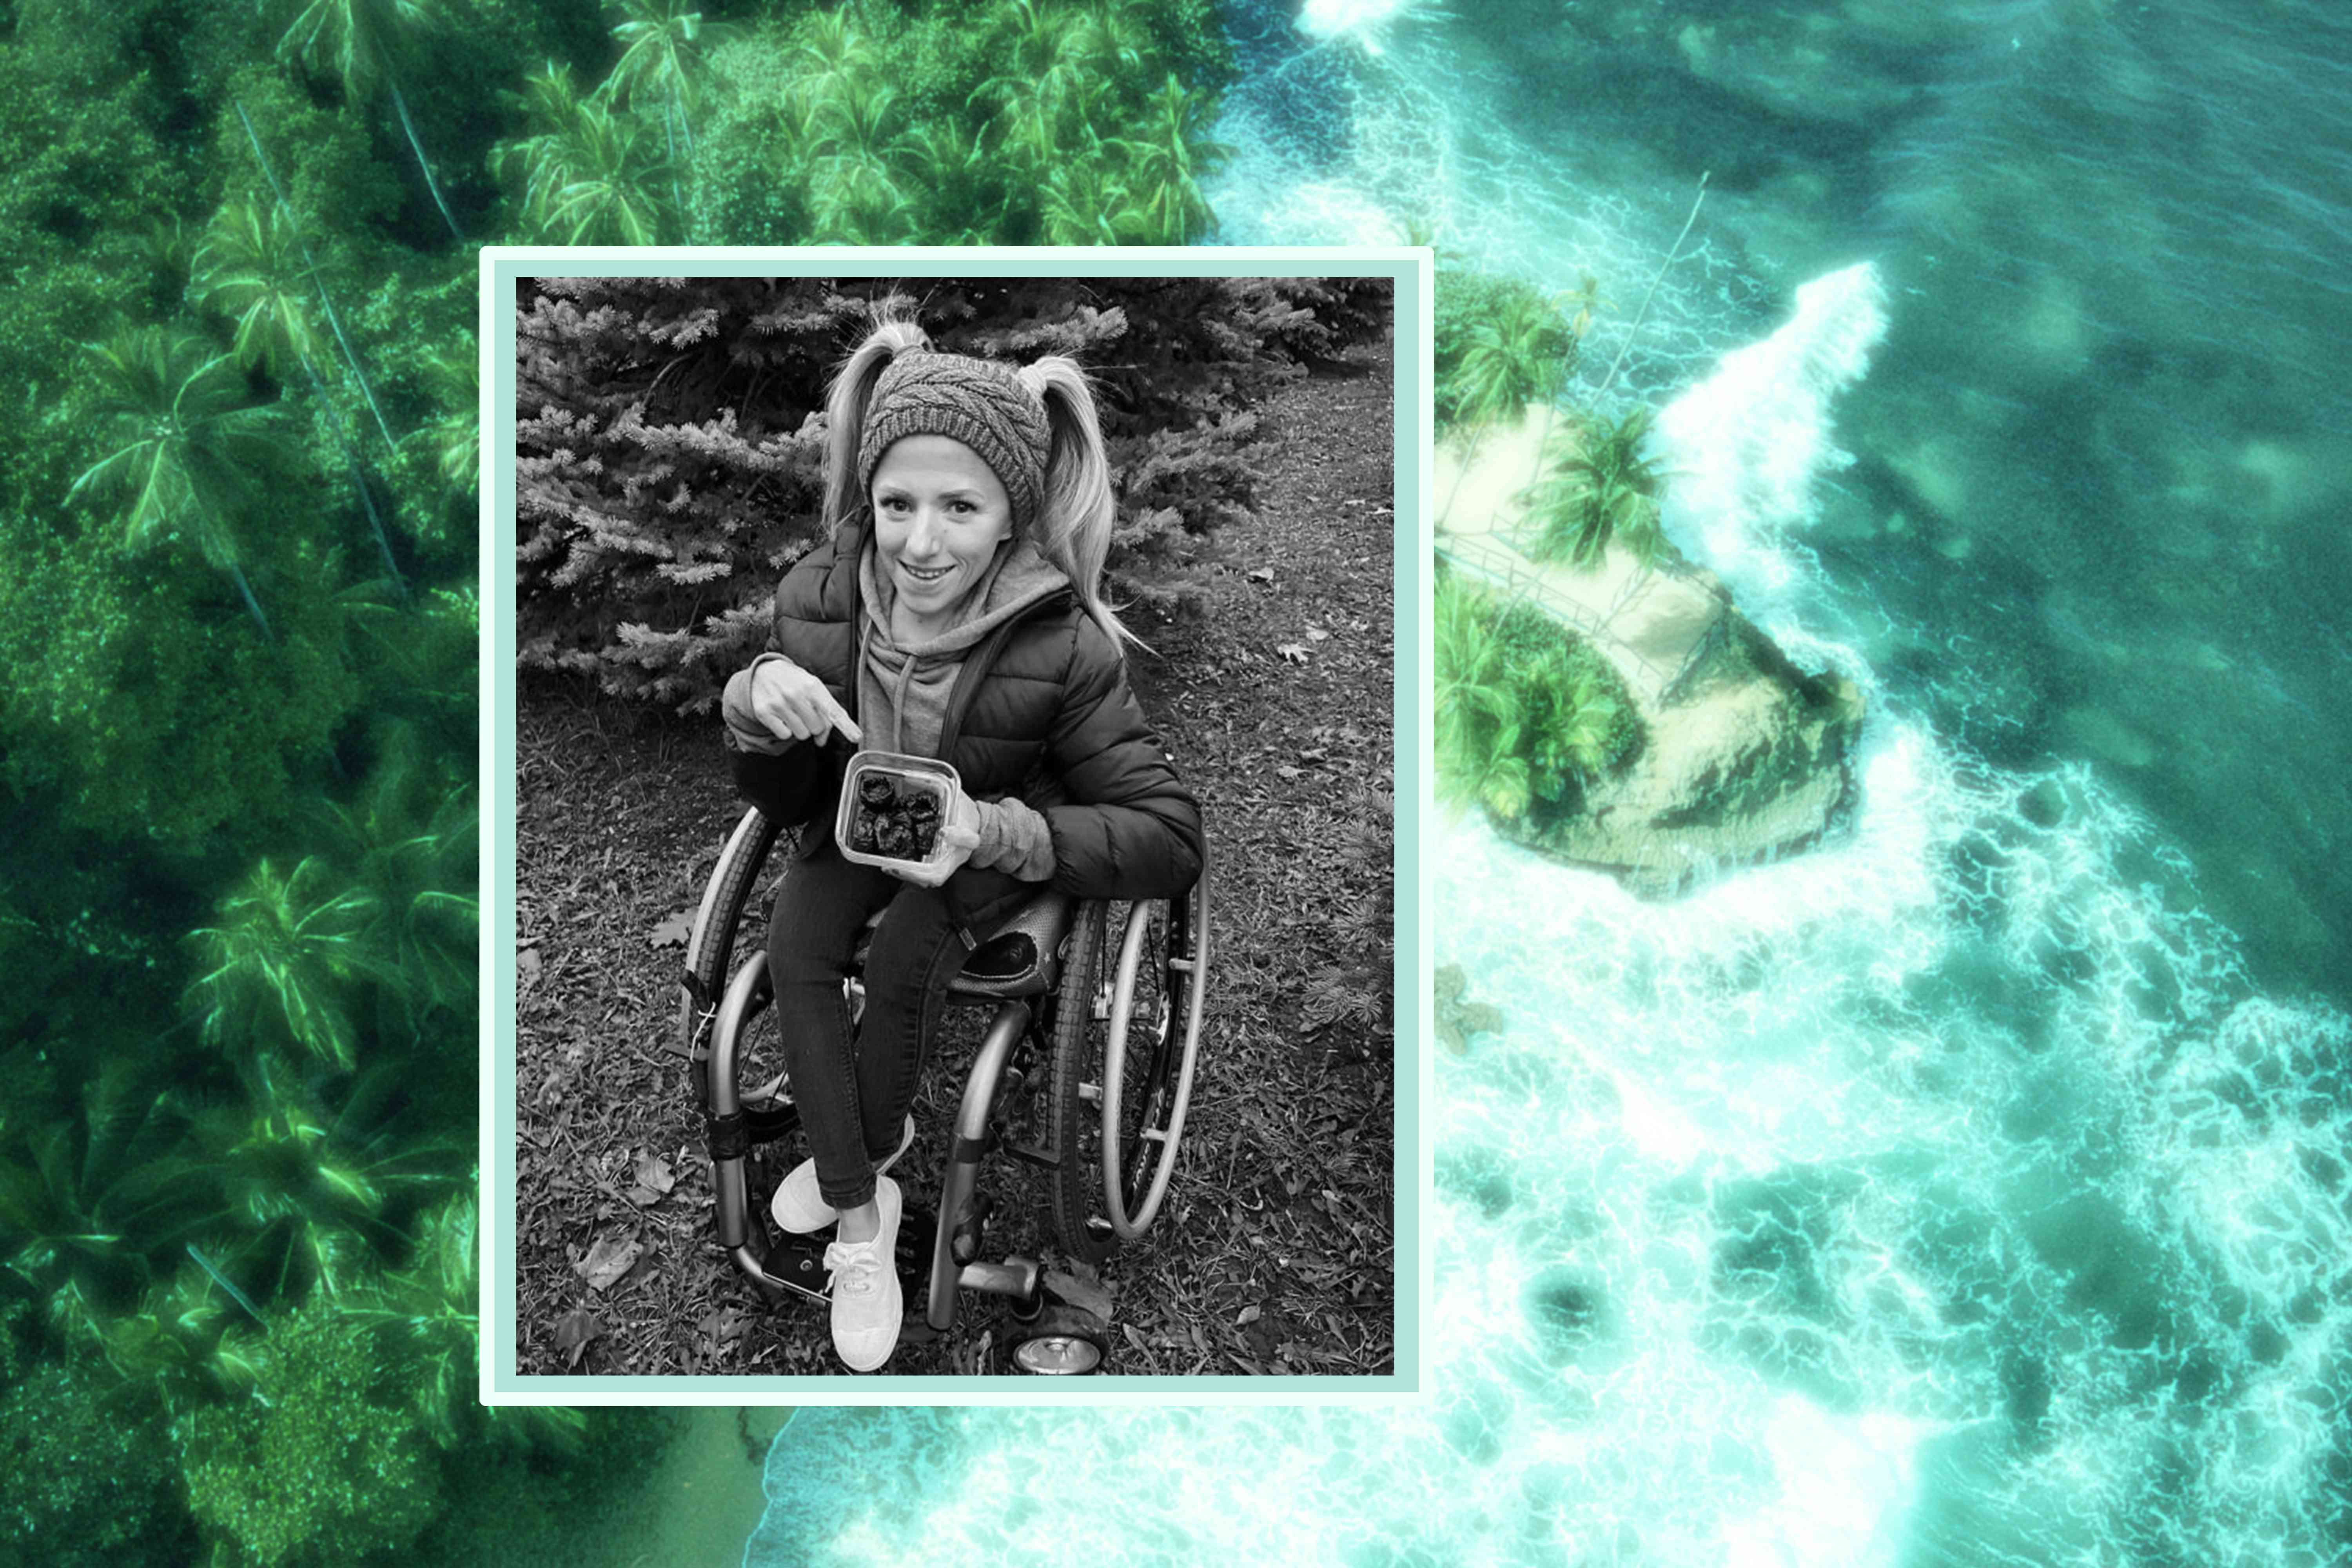 这张照片是克里斯汀·维多利亚坐在轮椅上，旁边是一张沙滩照片。